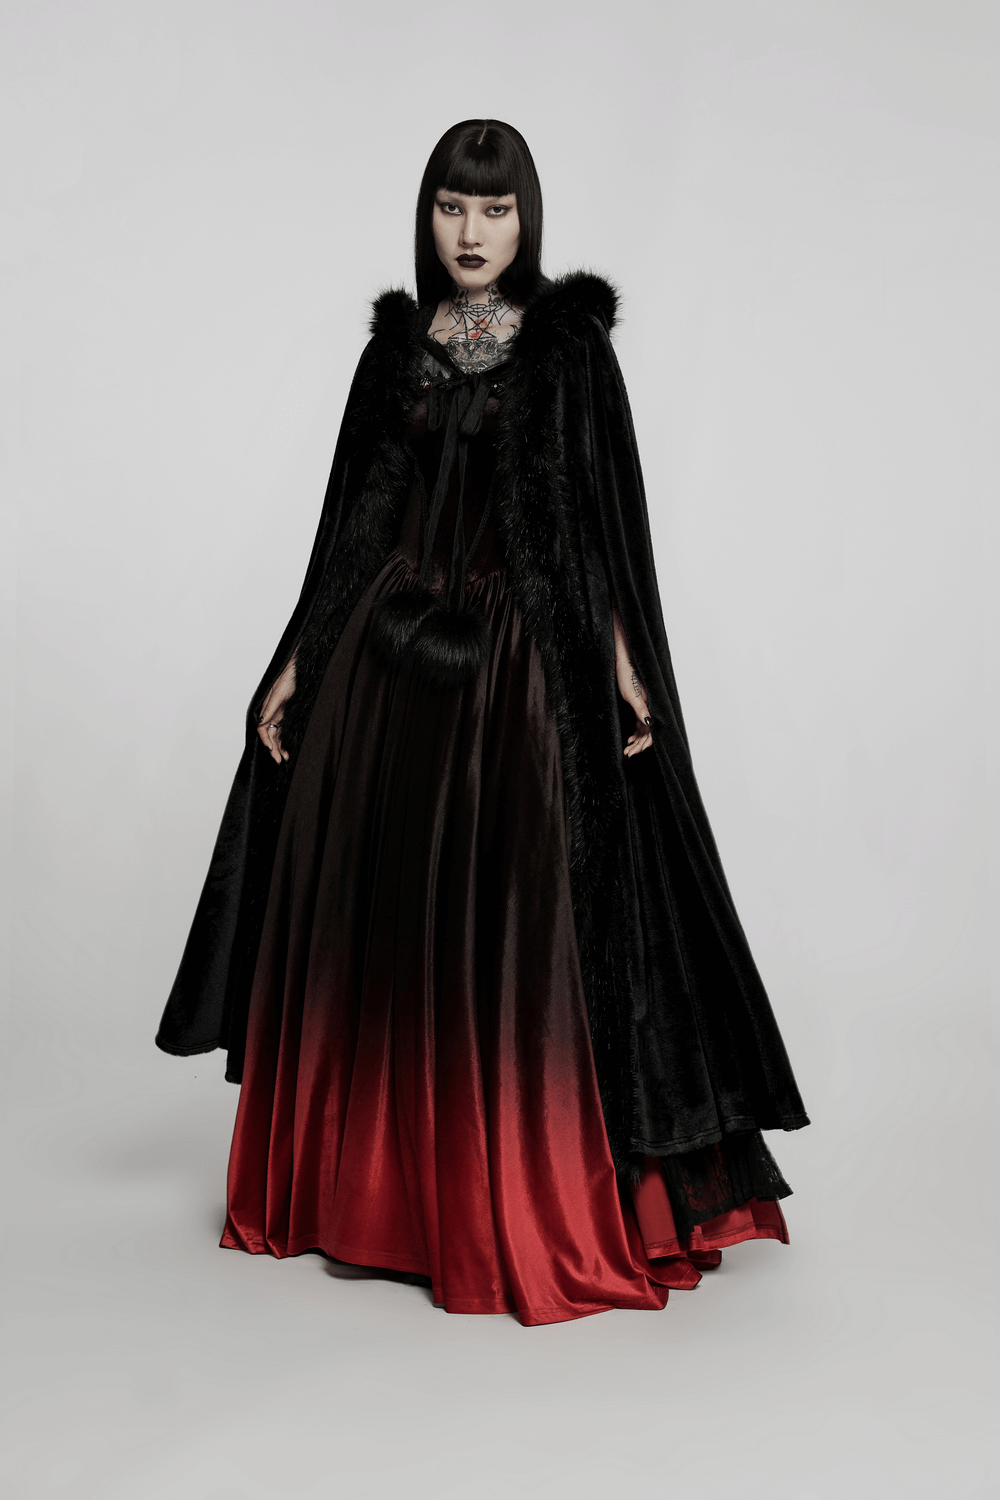 Elegant Women's Gothic Faux Fur Velvet Long Cloak - HARD'N'HEAVY